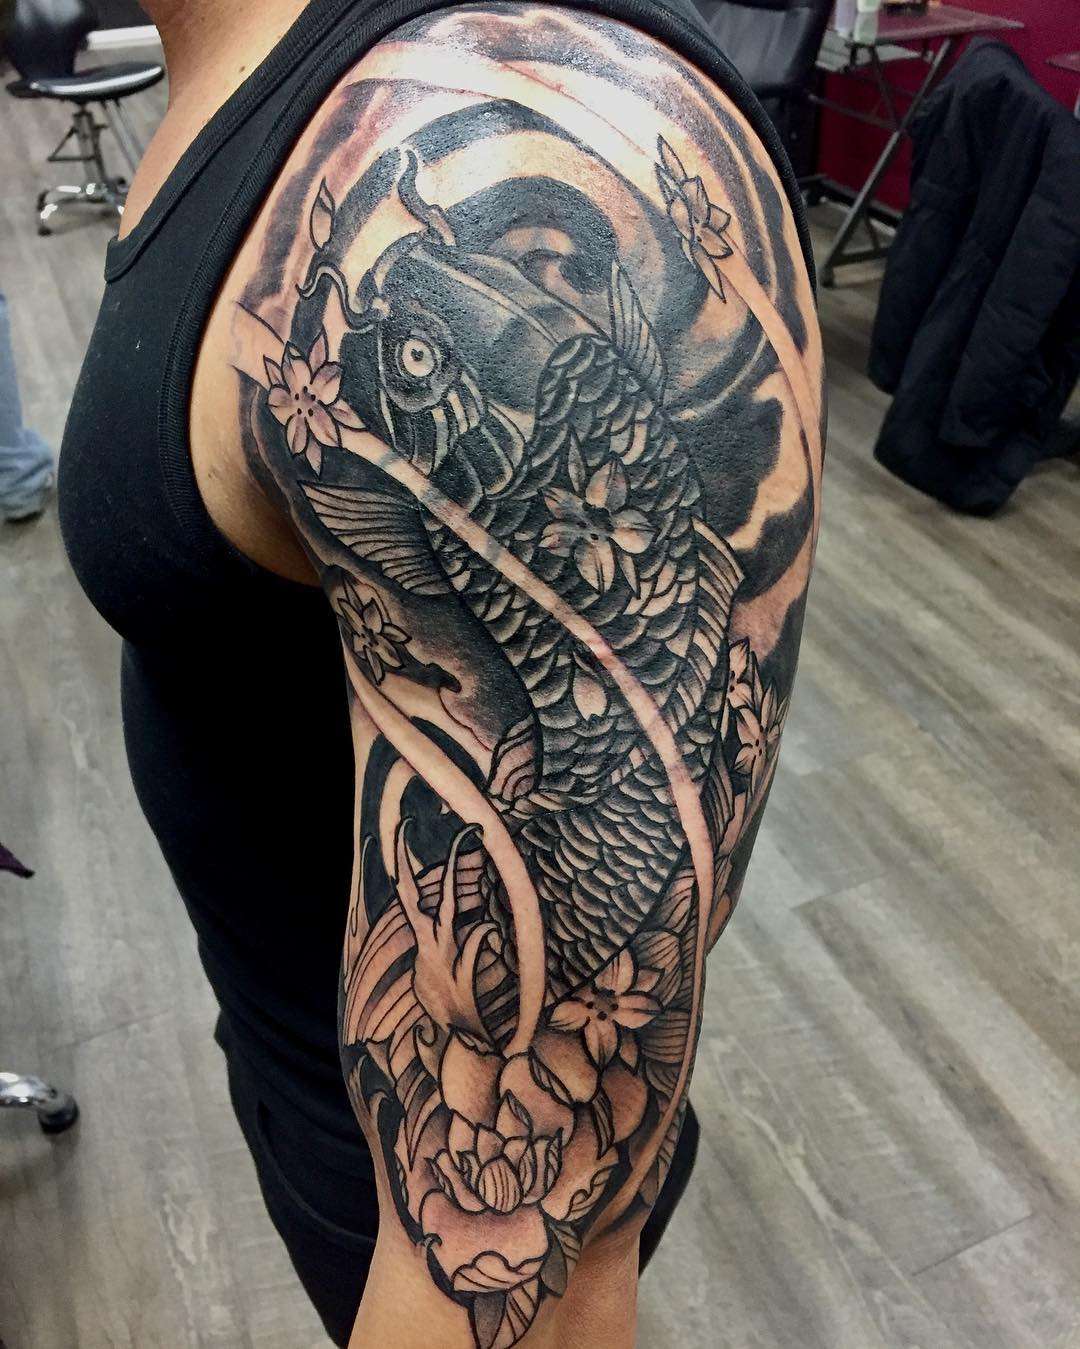 Tatuaje de pez koi negro tipo manga